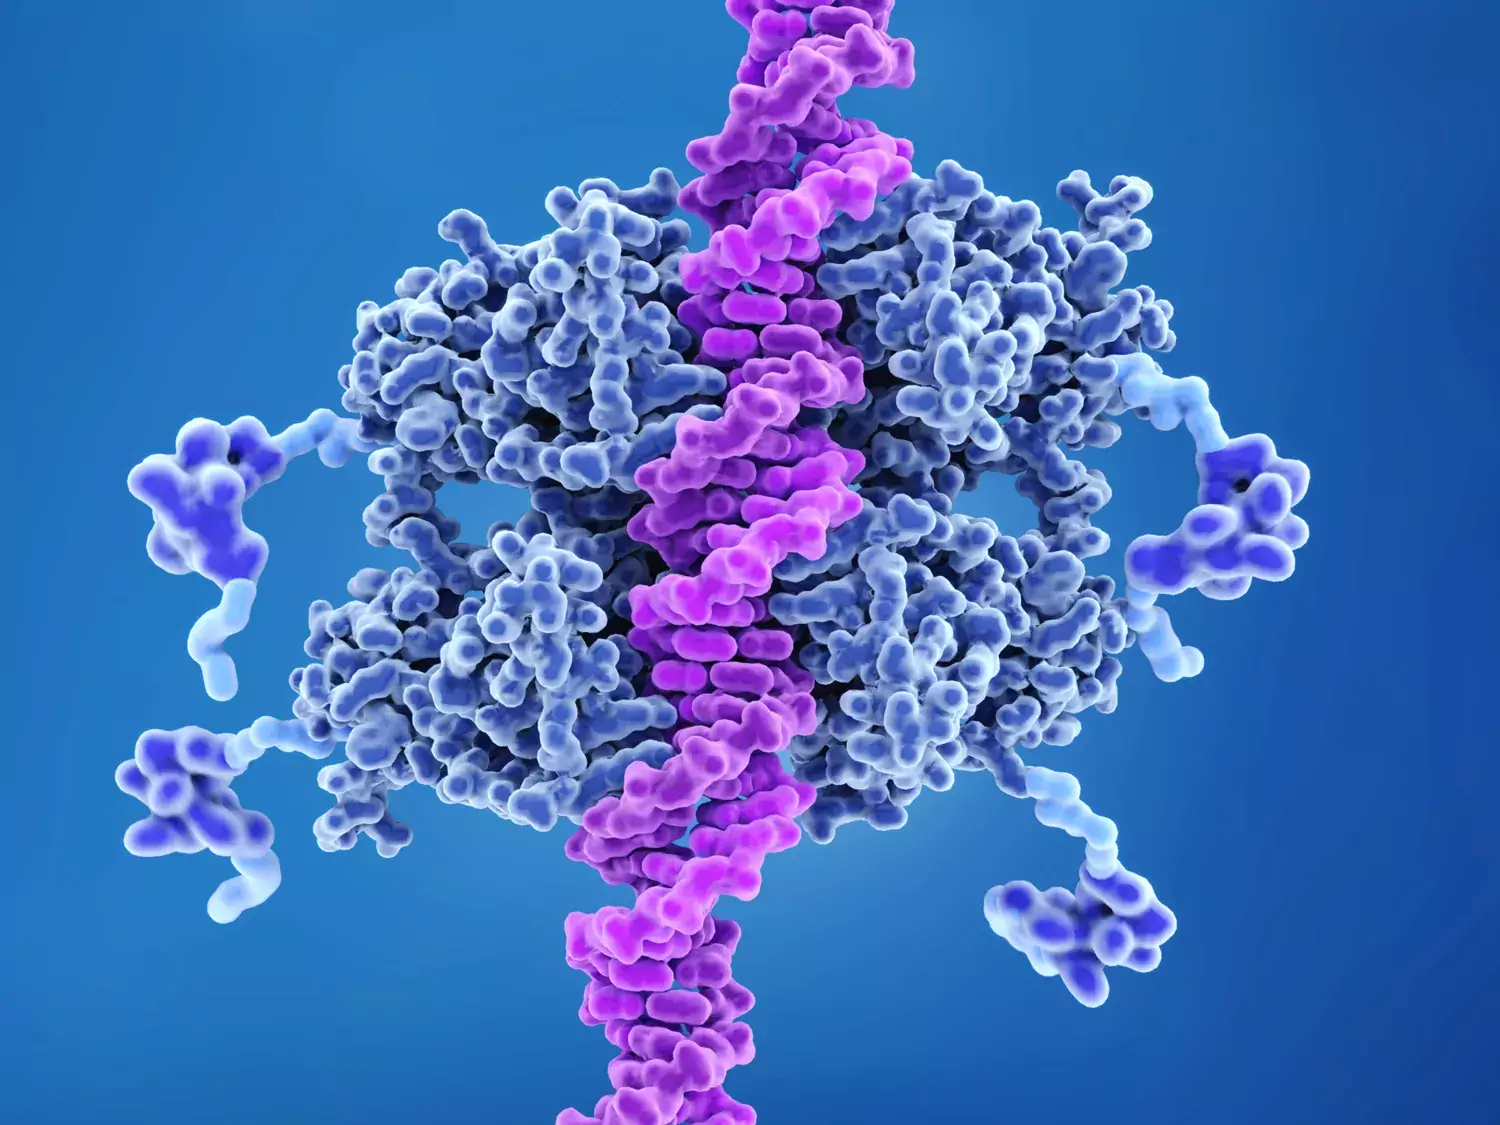 p53 tumör suppressor protein bunden till DNA